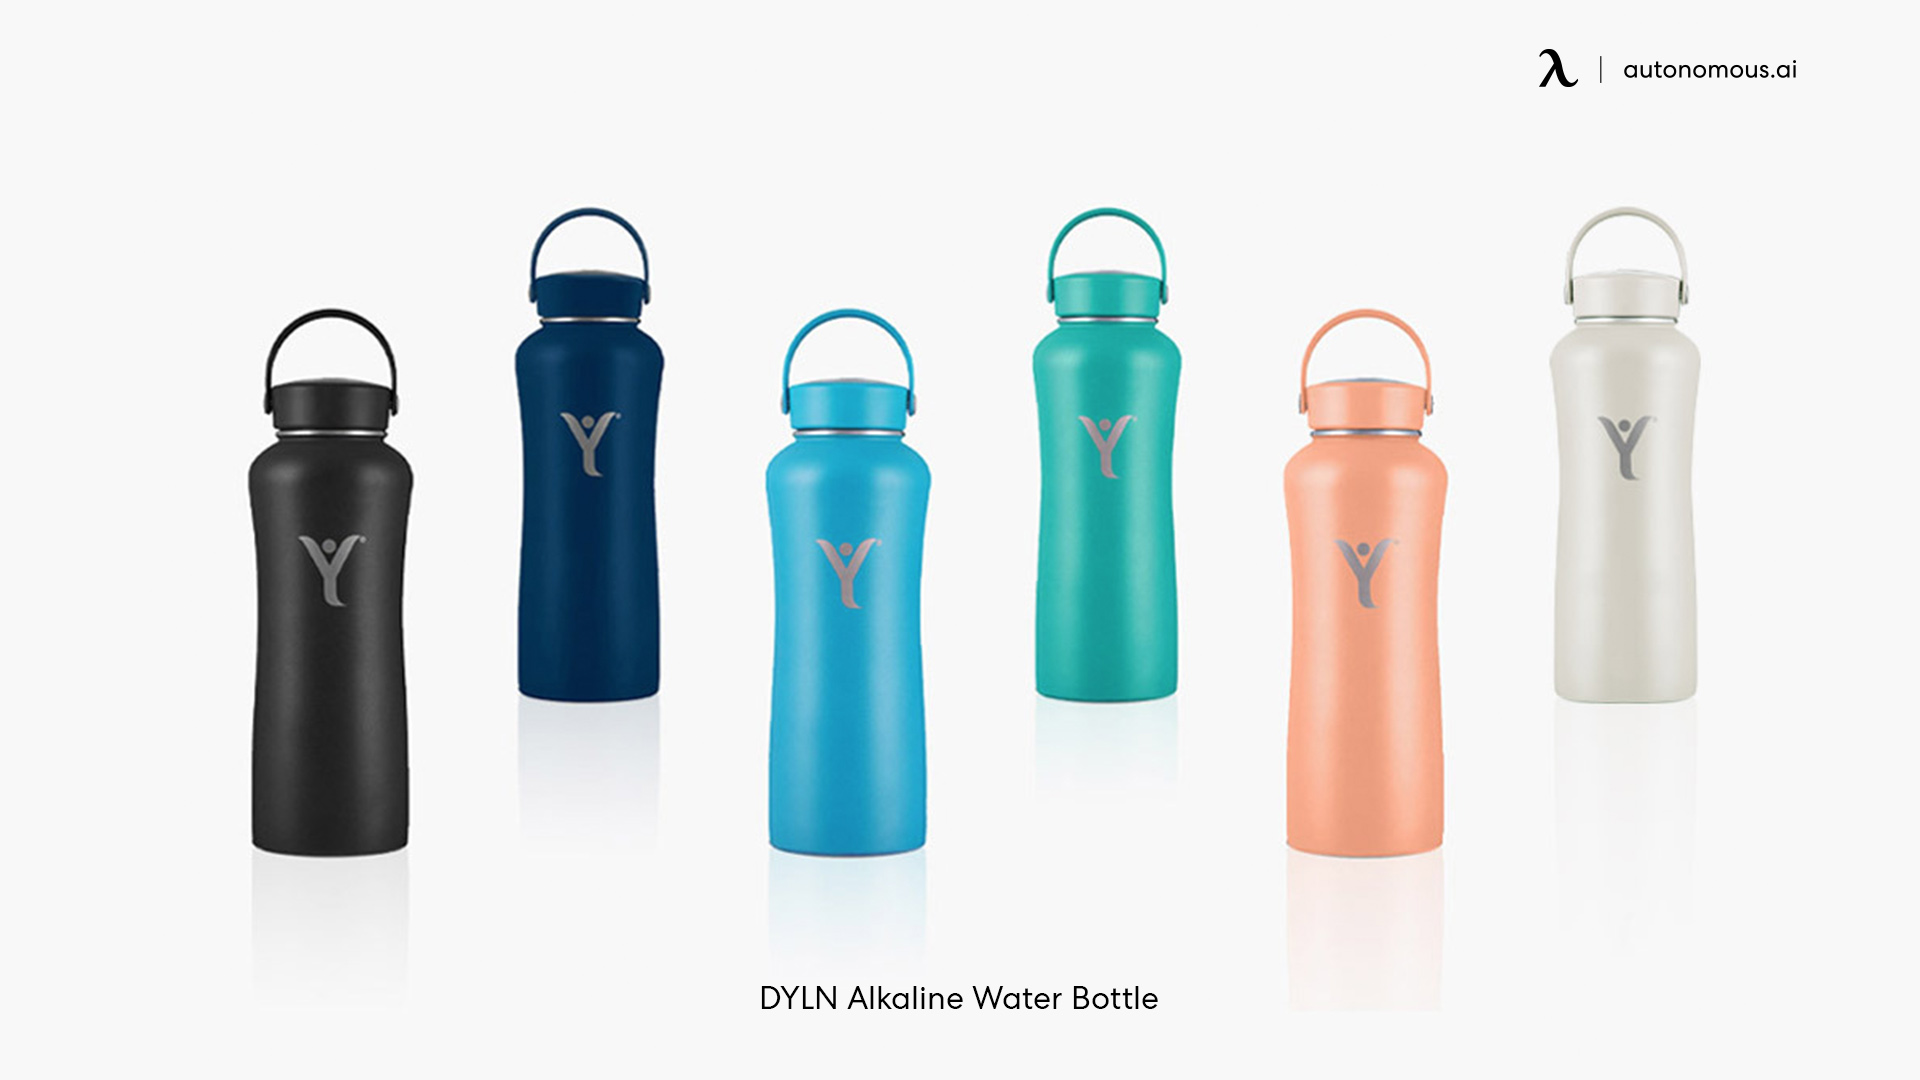 DYLN alkaline water bottle reviews